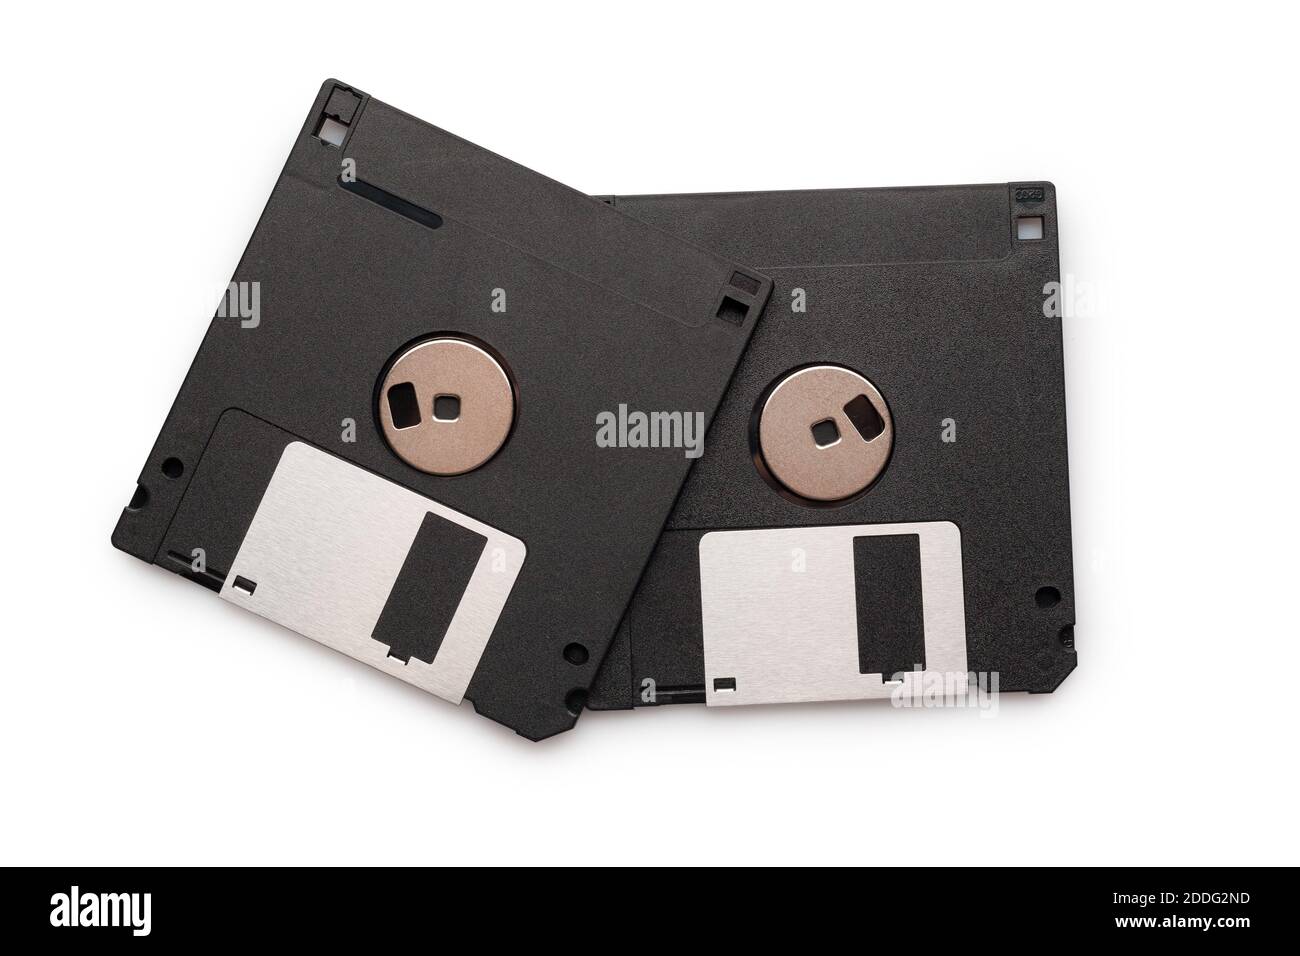 Floppy disk di plastica nera isolato su sfondo bianco. Tecnologia obsoleta. Dischetto di archiviazione dati. Foto Stock